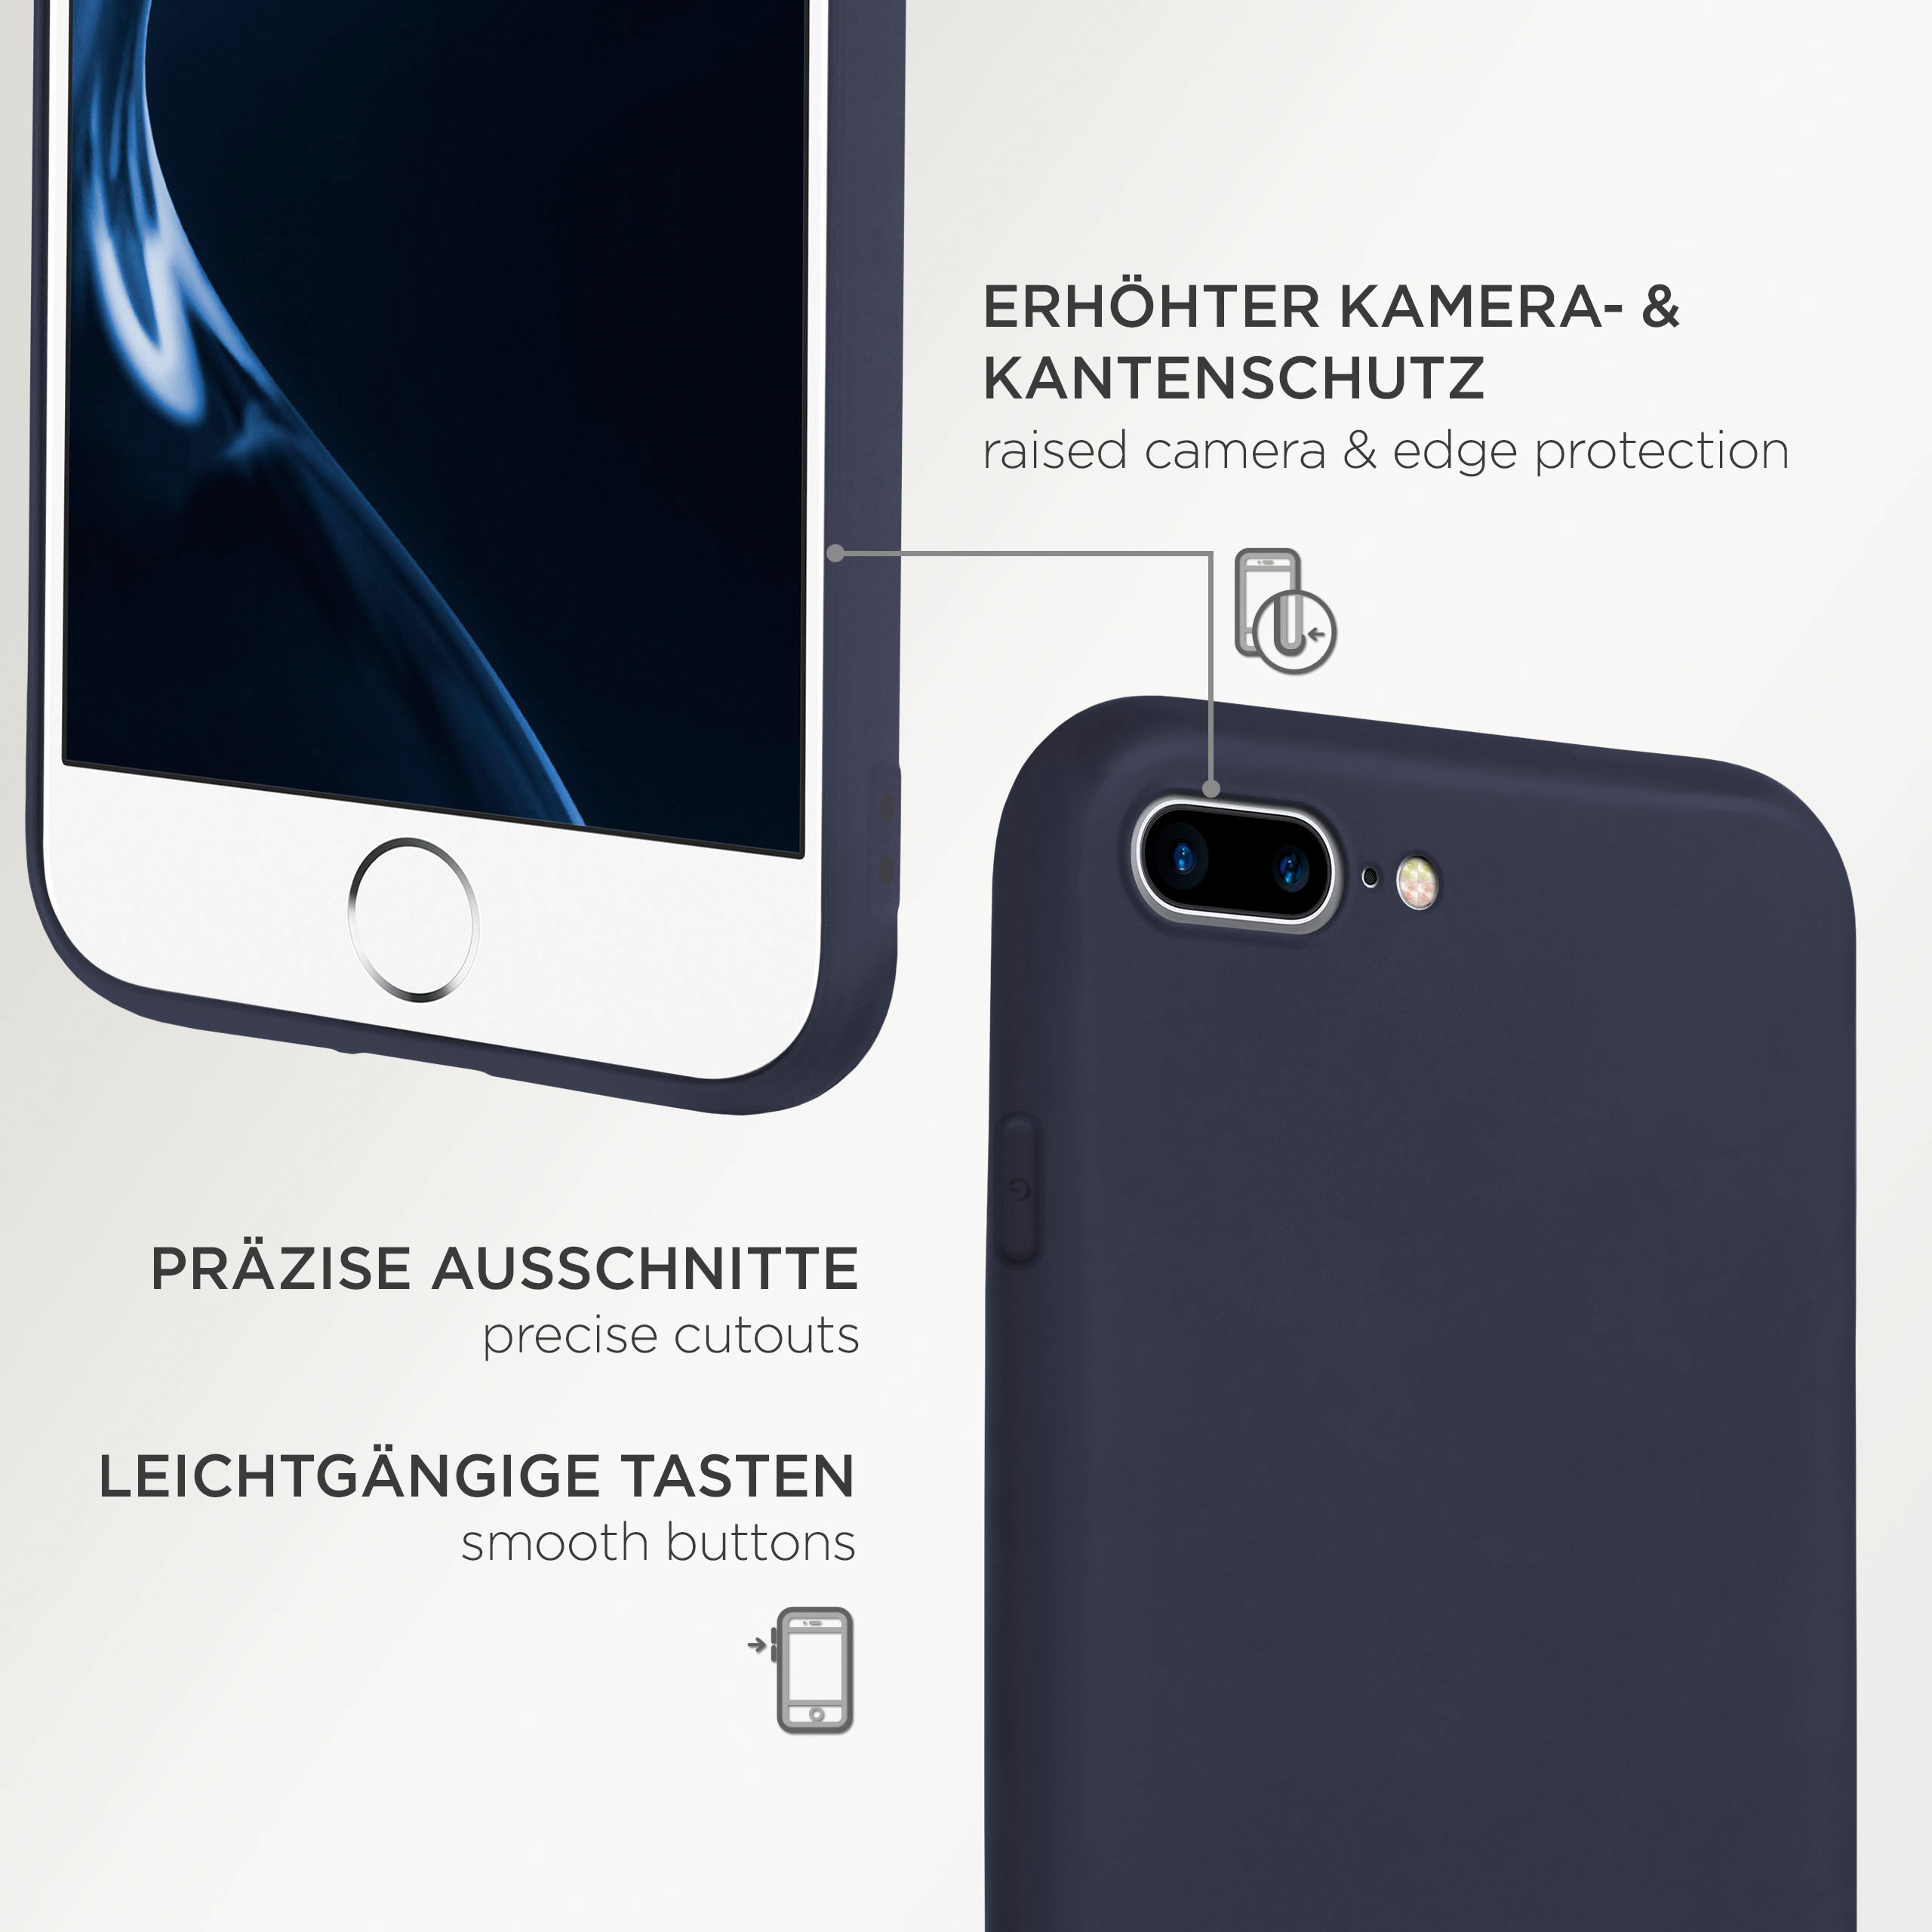 ONEFLOW SlimShield Pro Case, iPhone Blau 8 Backcover, Plus, Plus Apple, 7 iPhone 